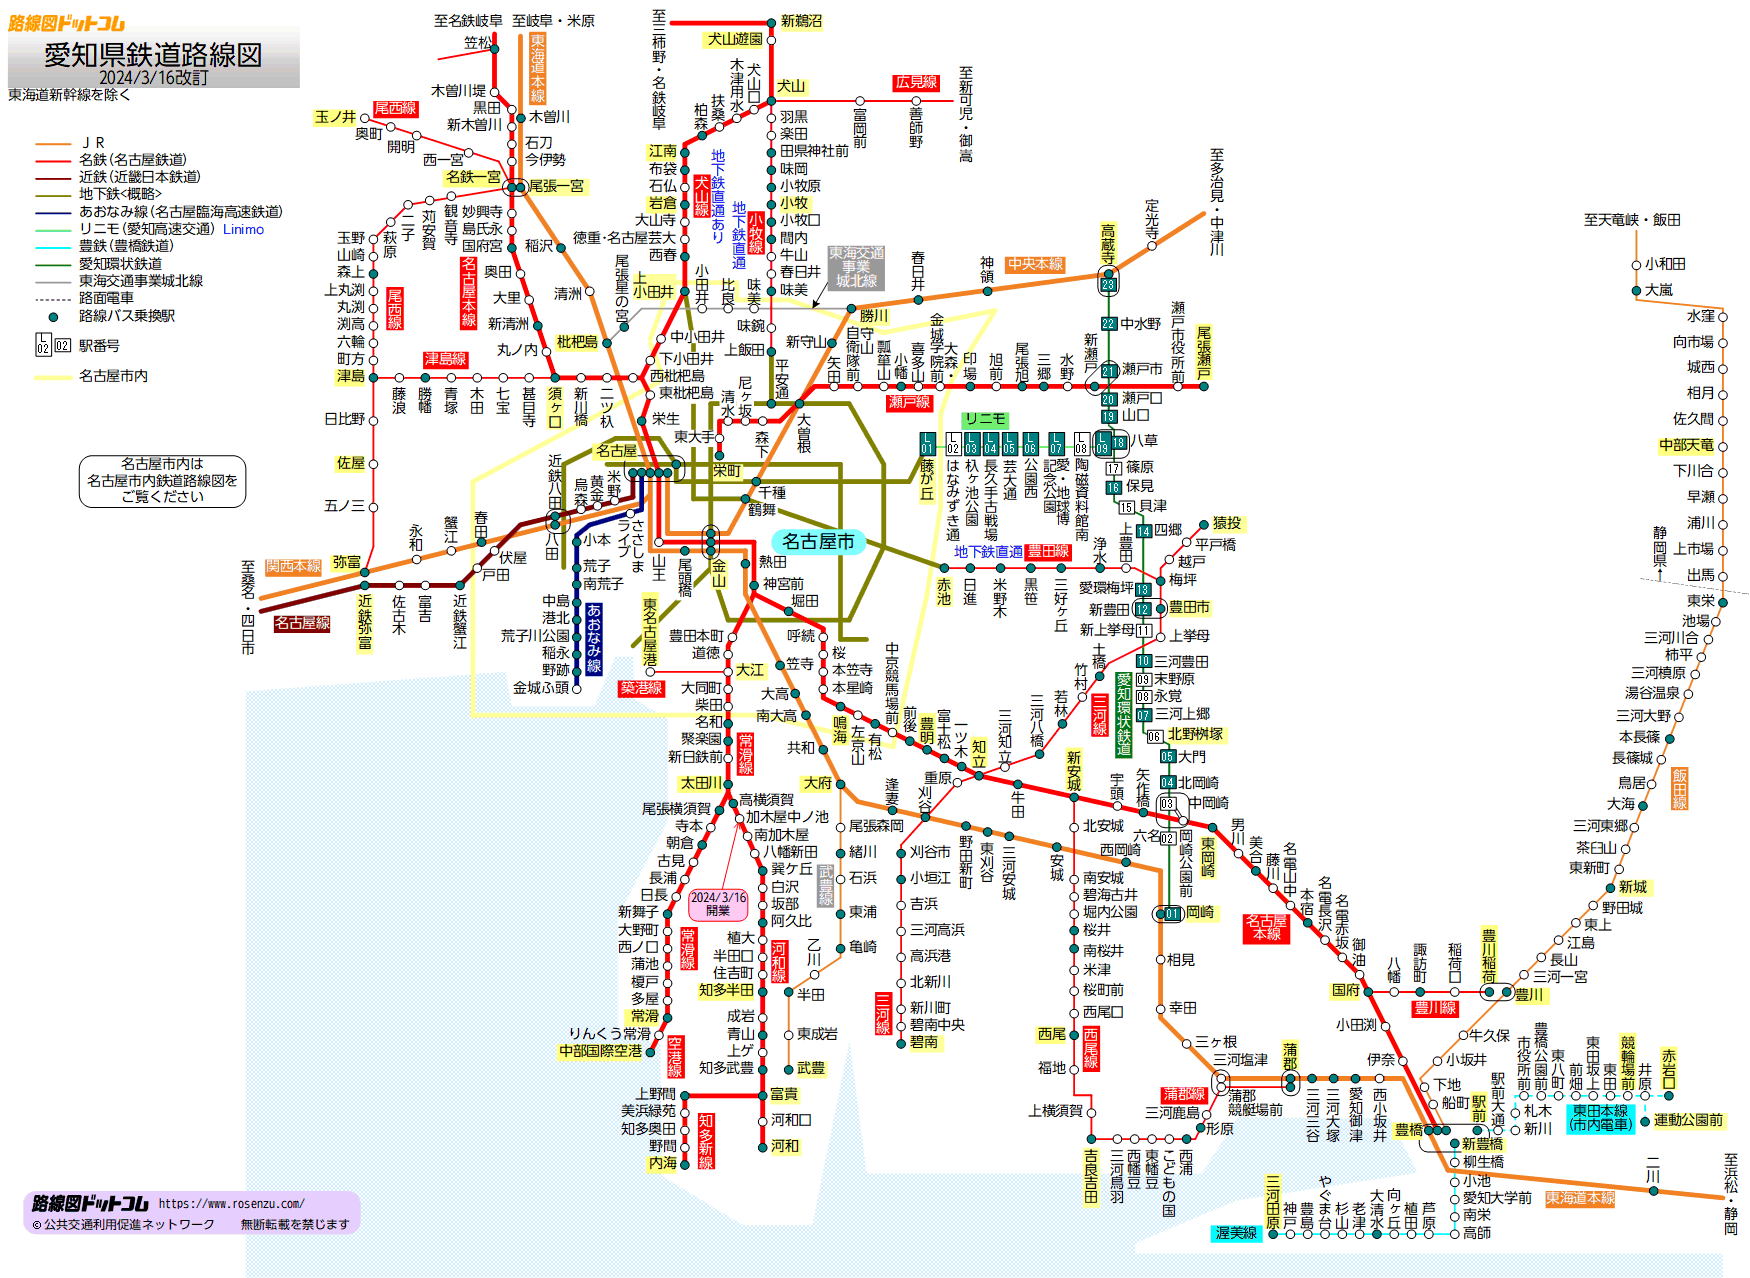 路線図ドットコム □愛知県鉄道路線図